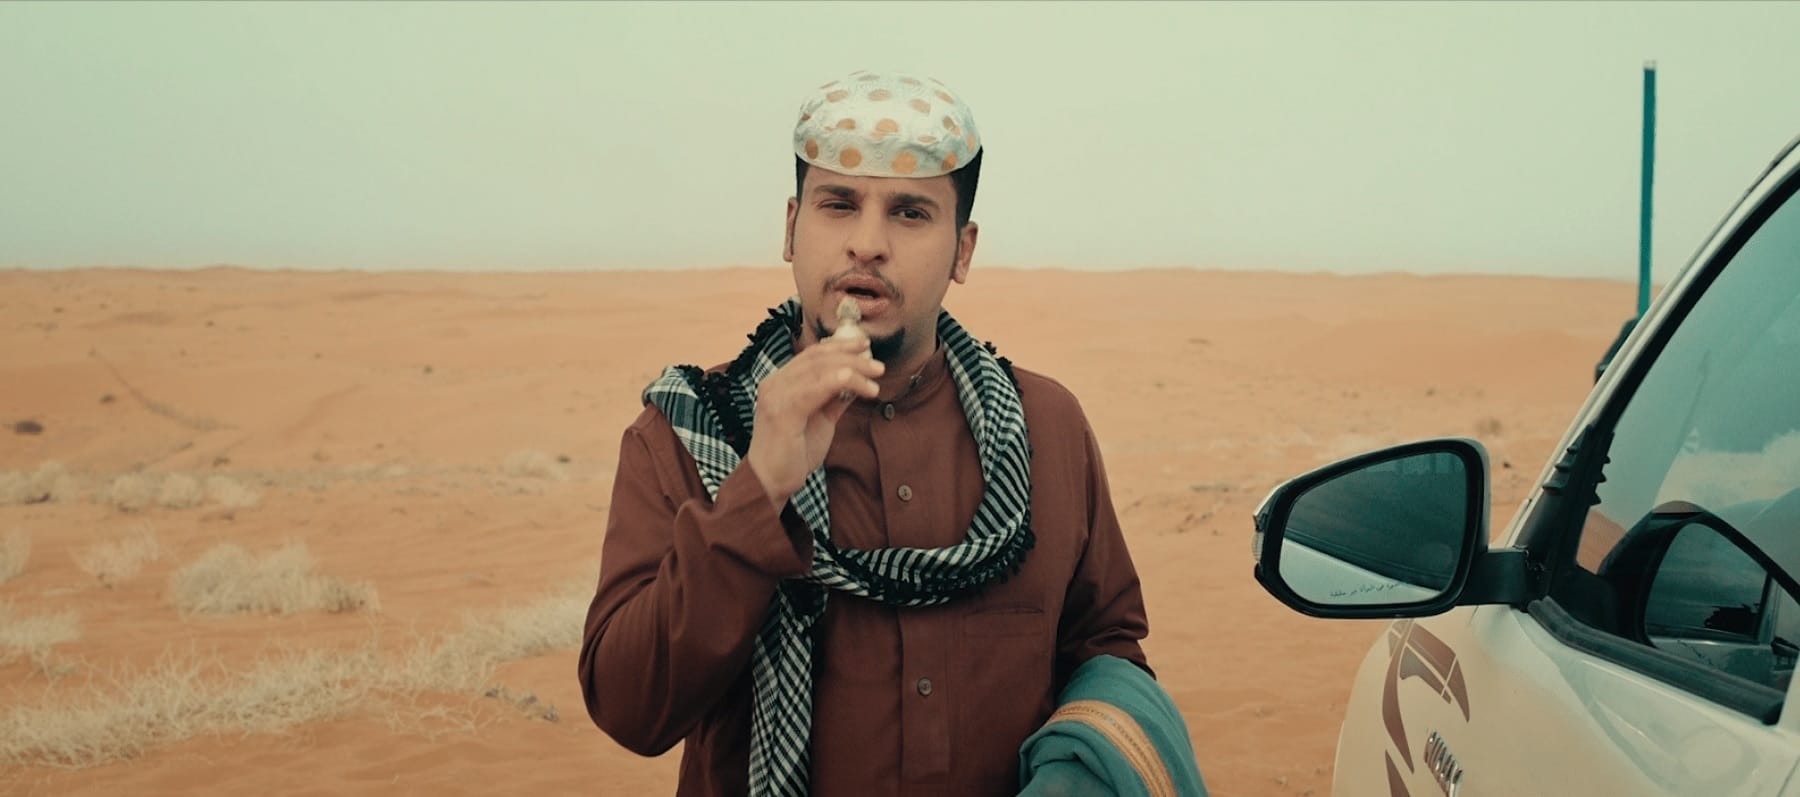 ما تودّون معرفته عن قنبلة السينما السعودية "شباب البومب"